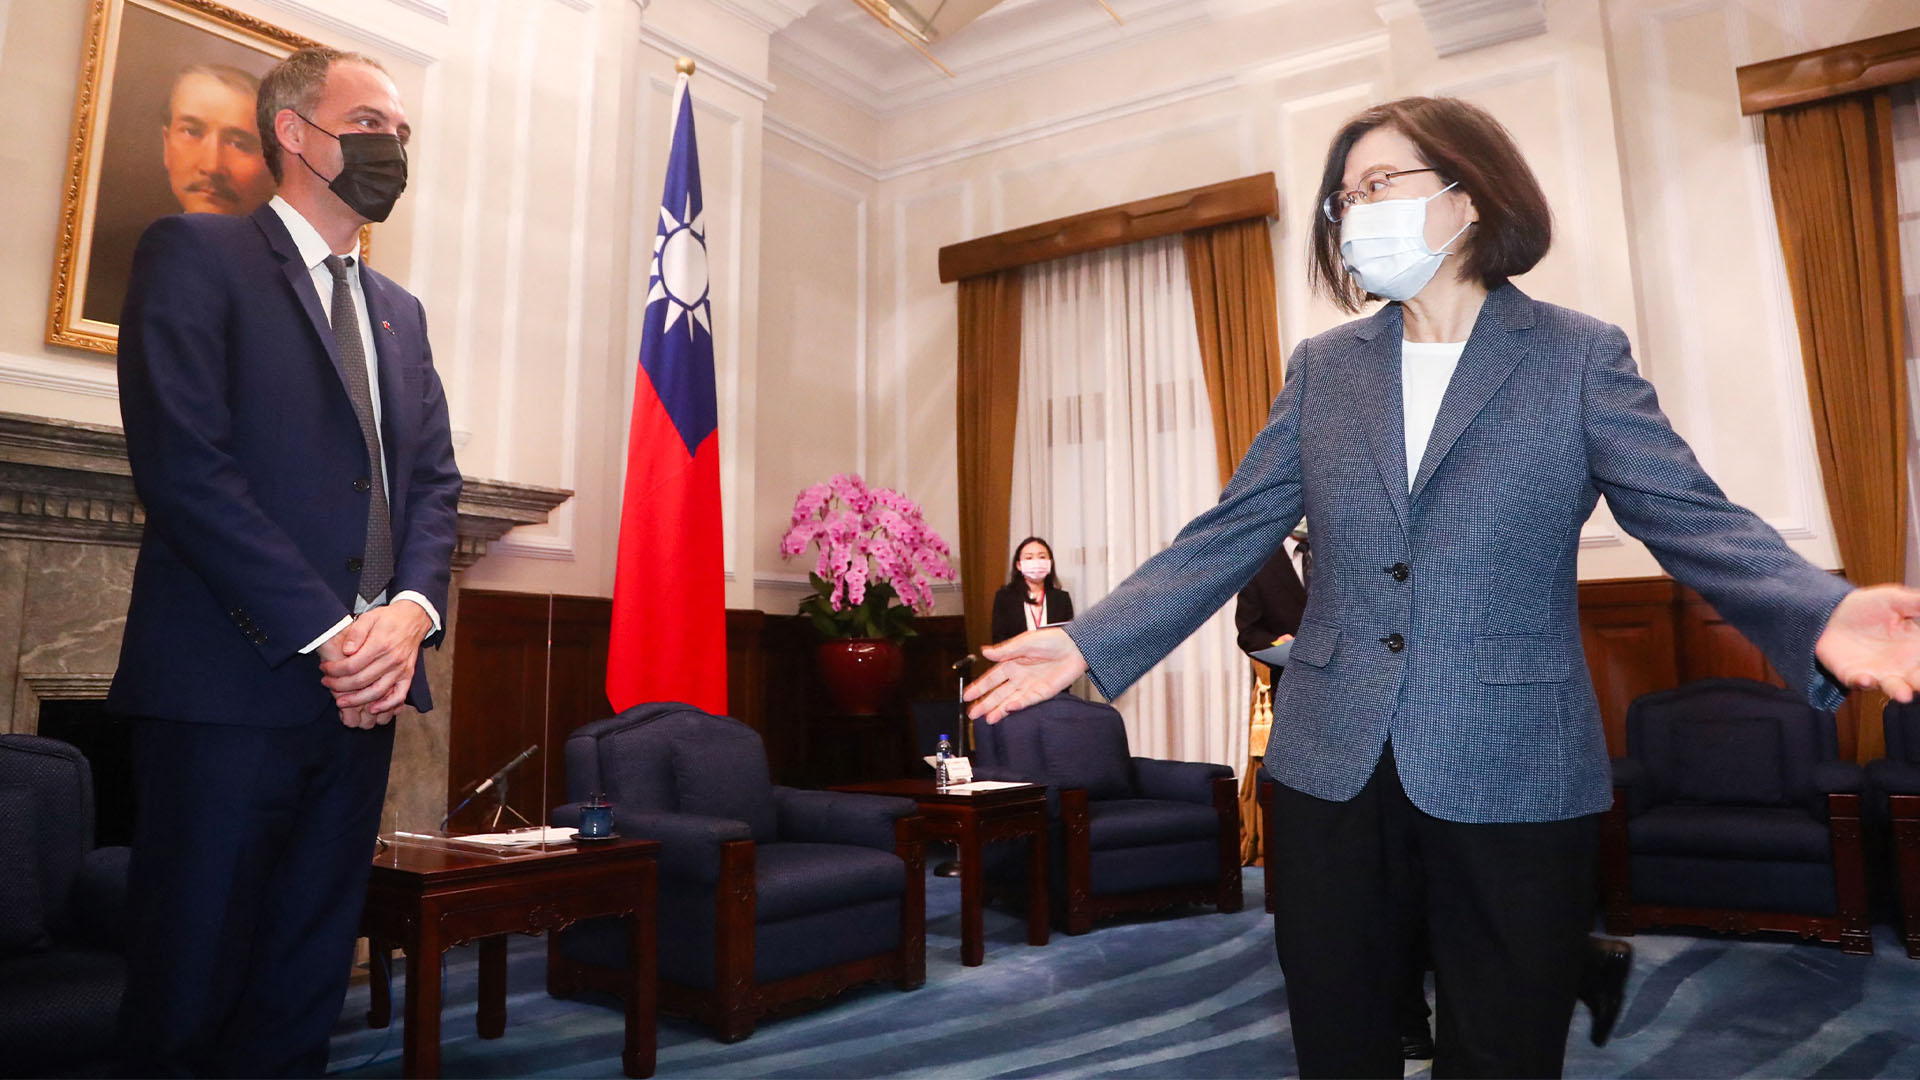 Делегация ЕС впервые приехала с официальным визитом на Тайвань